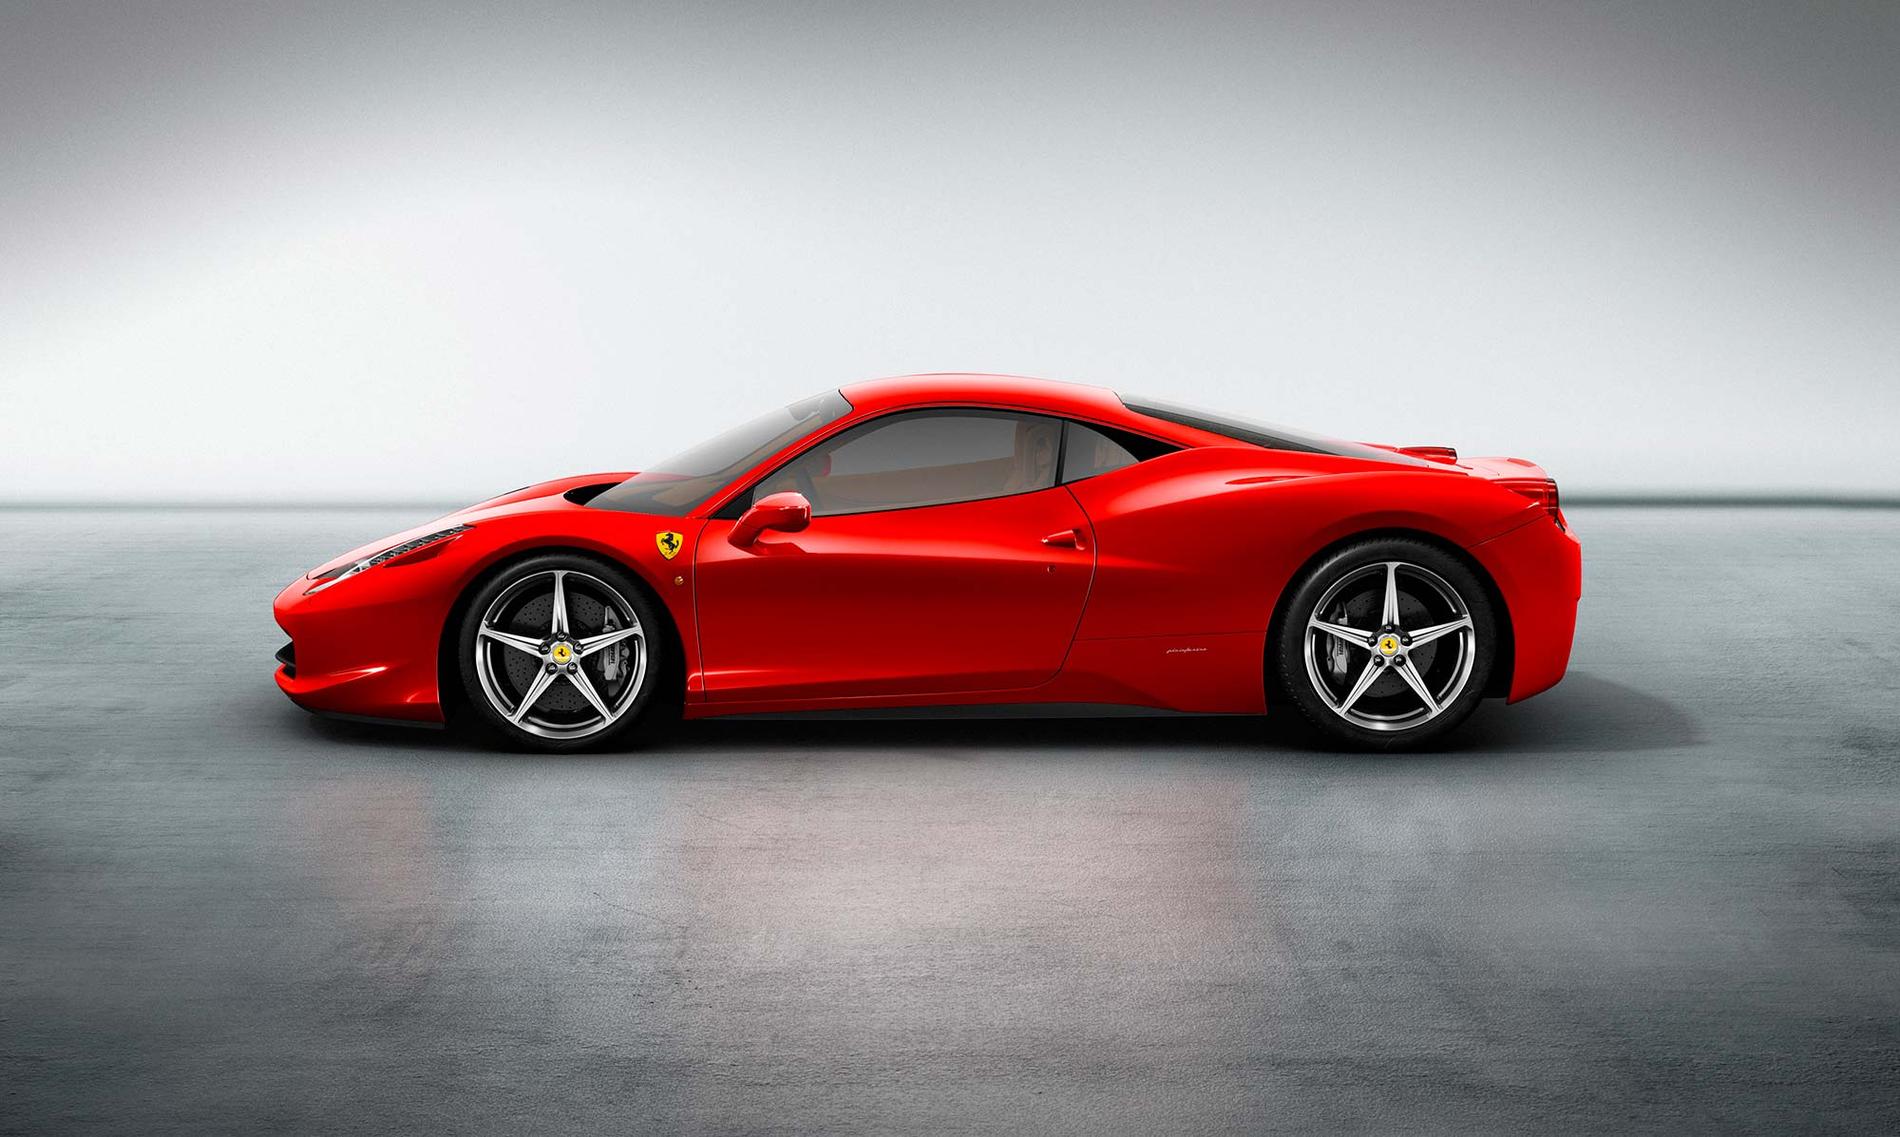 Så här ser Ferrari 458 Italia ut.